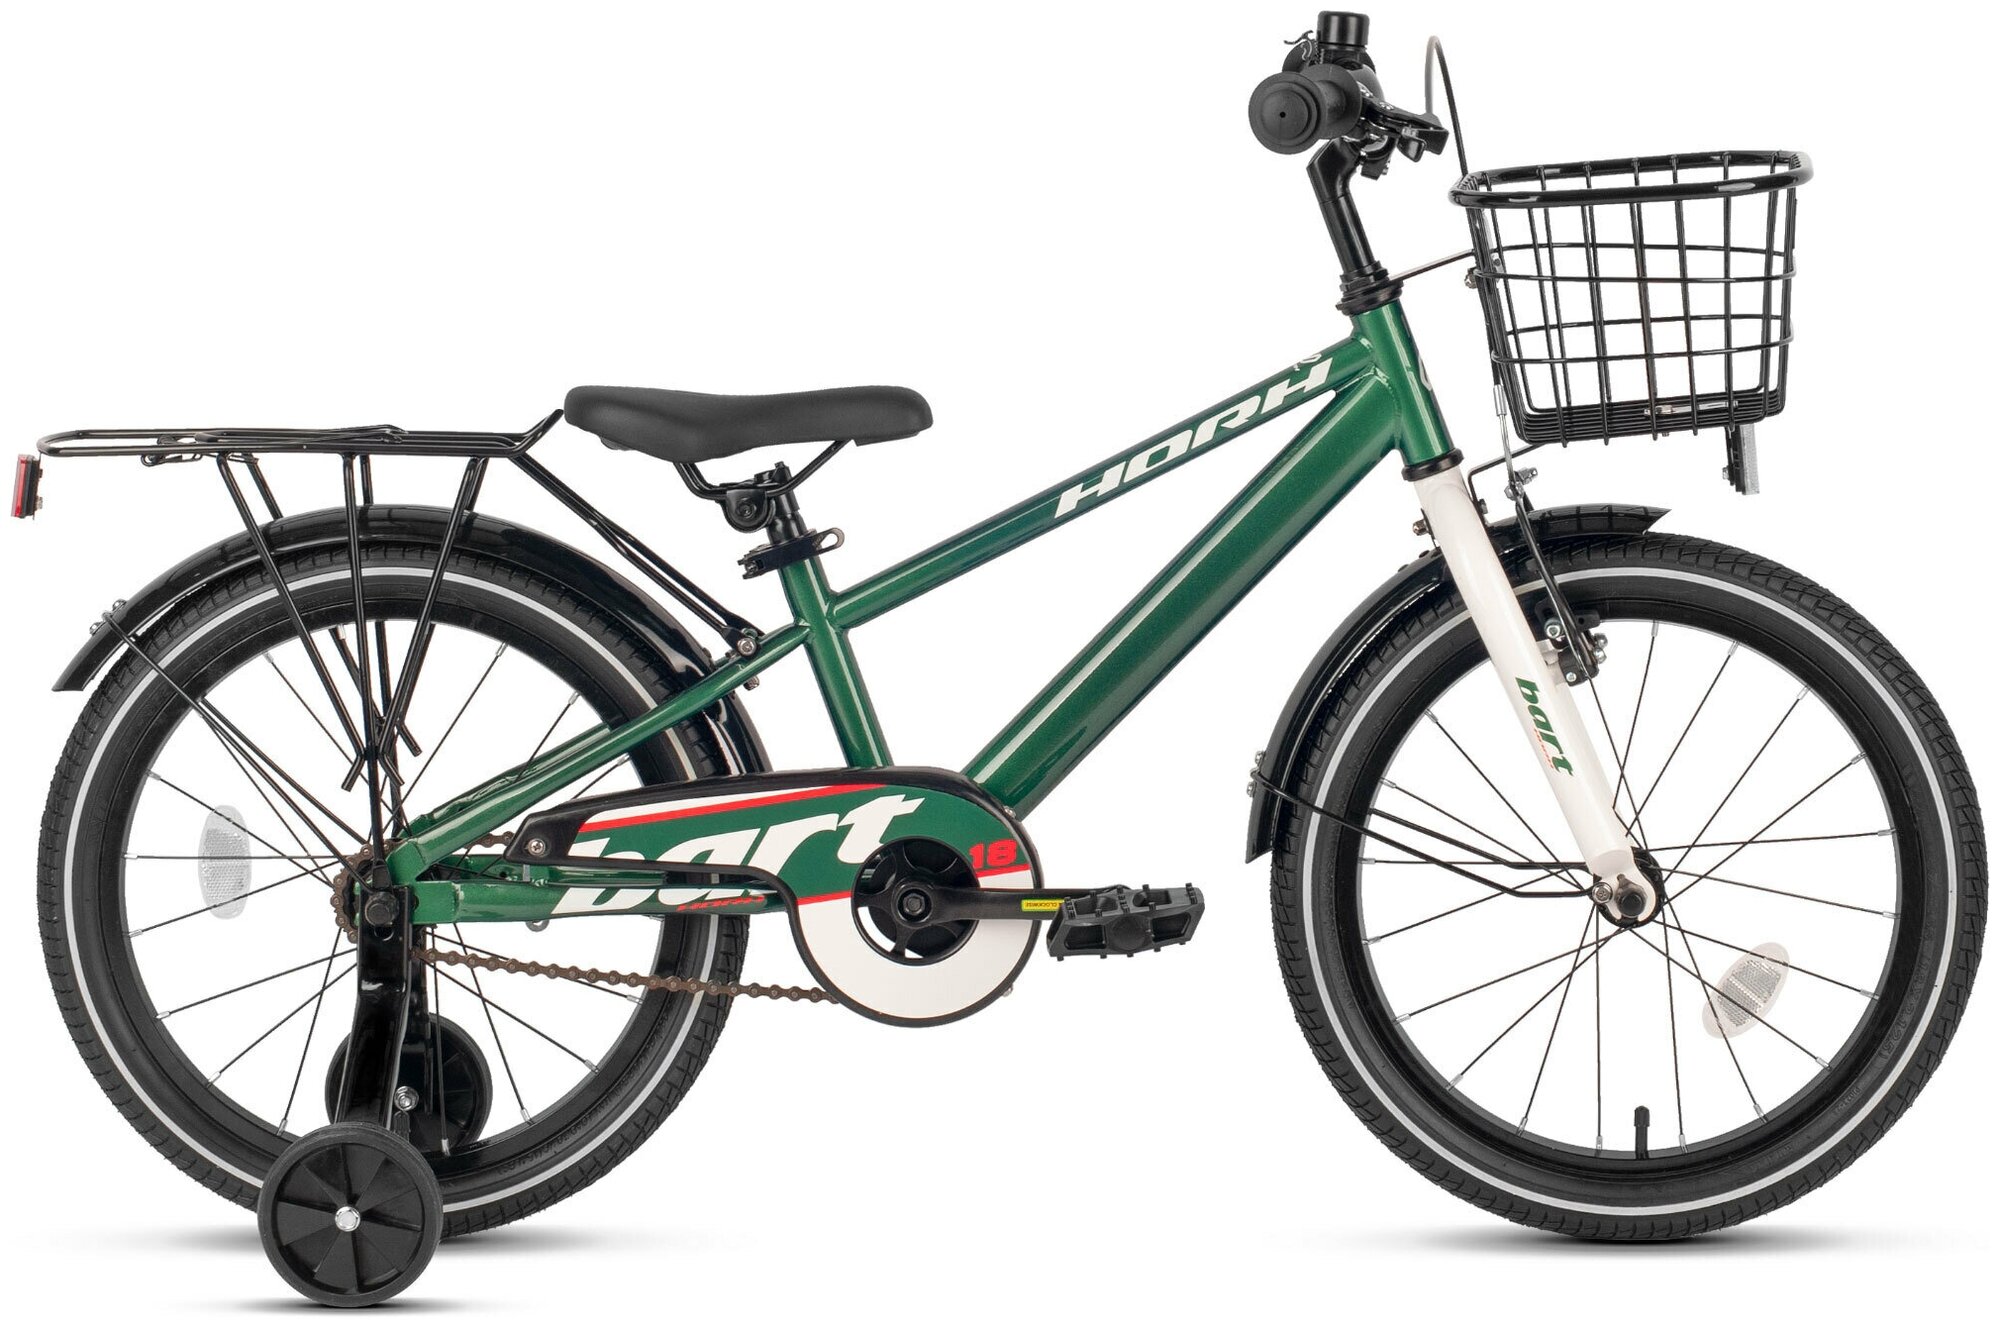 Велосипед детский HORH BART 18 2022 для детей от 4 до 6 лет алюминиевый с защитой цепи, багажником, корзиной, звонком, 1 скорость, ободной и ножной тормоза, темно-зеленый цвет на рост 115-130